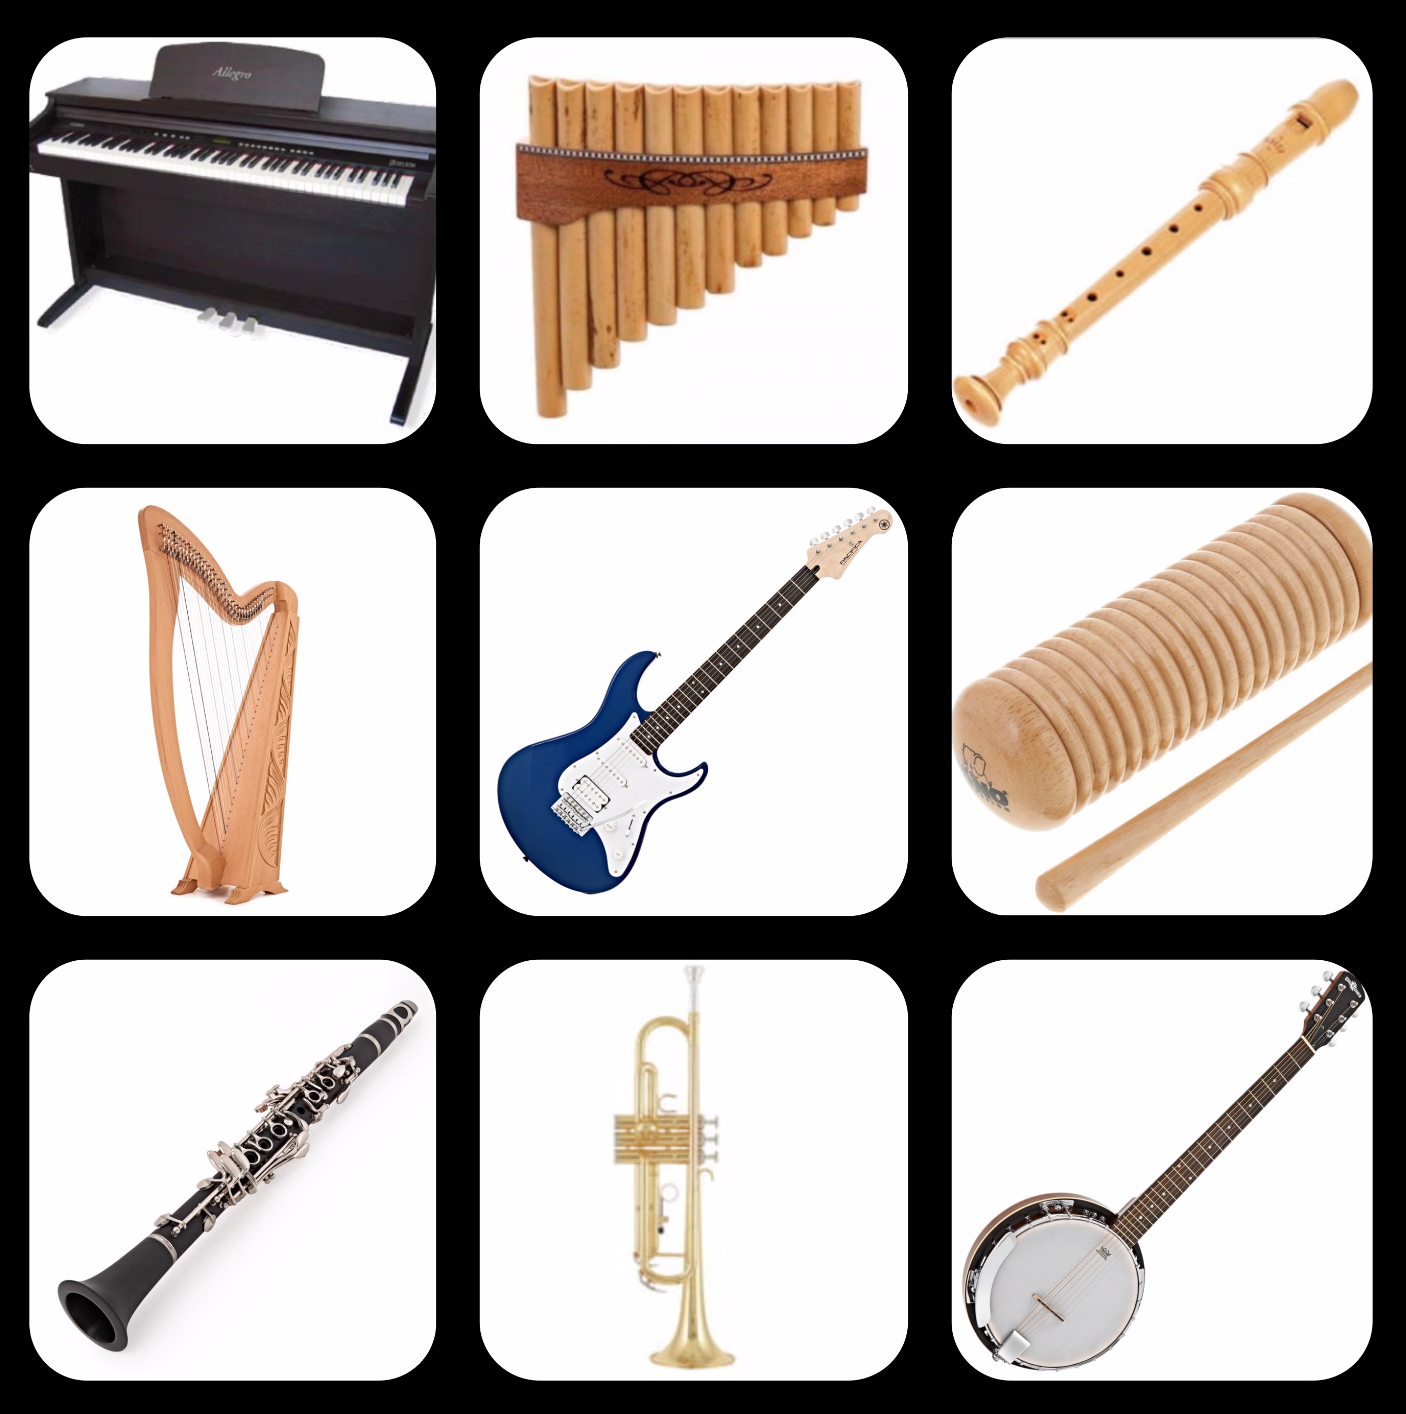 Les instruments de musique - La maternelle de Vivi